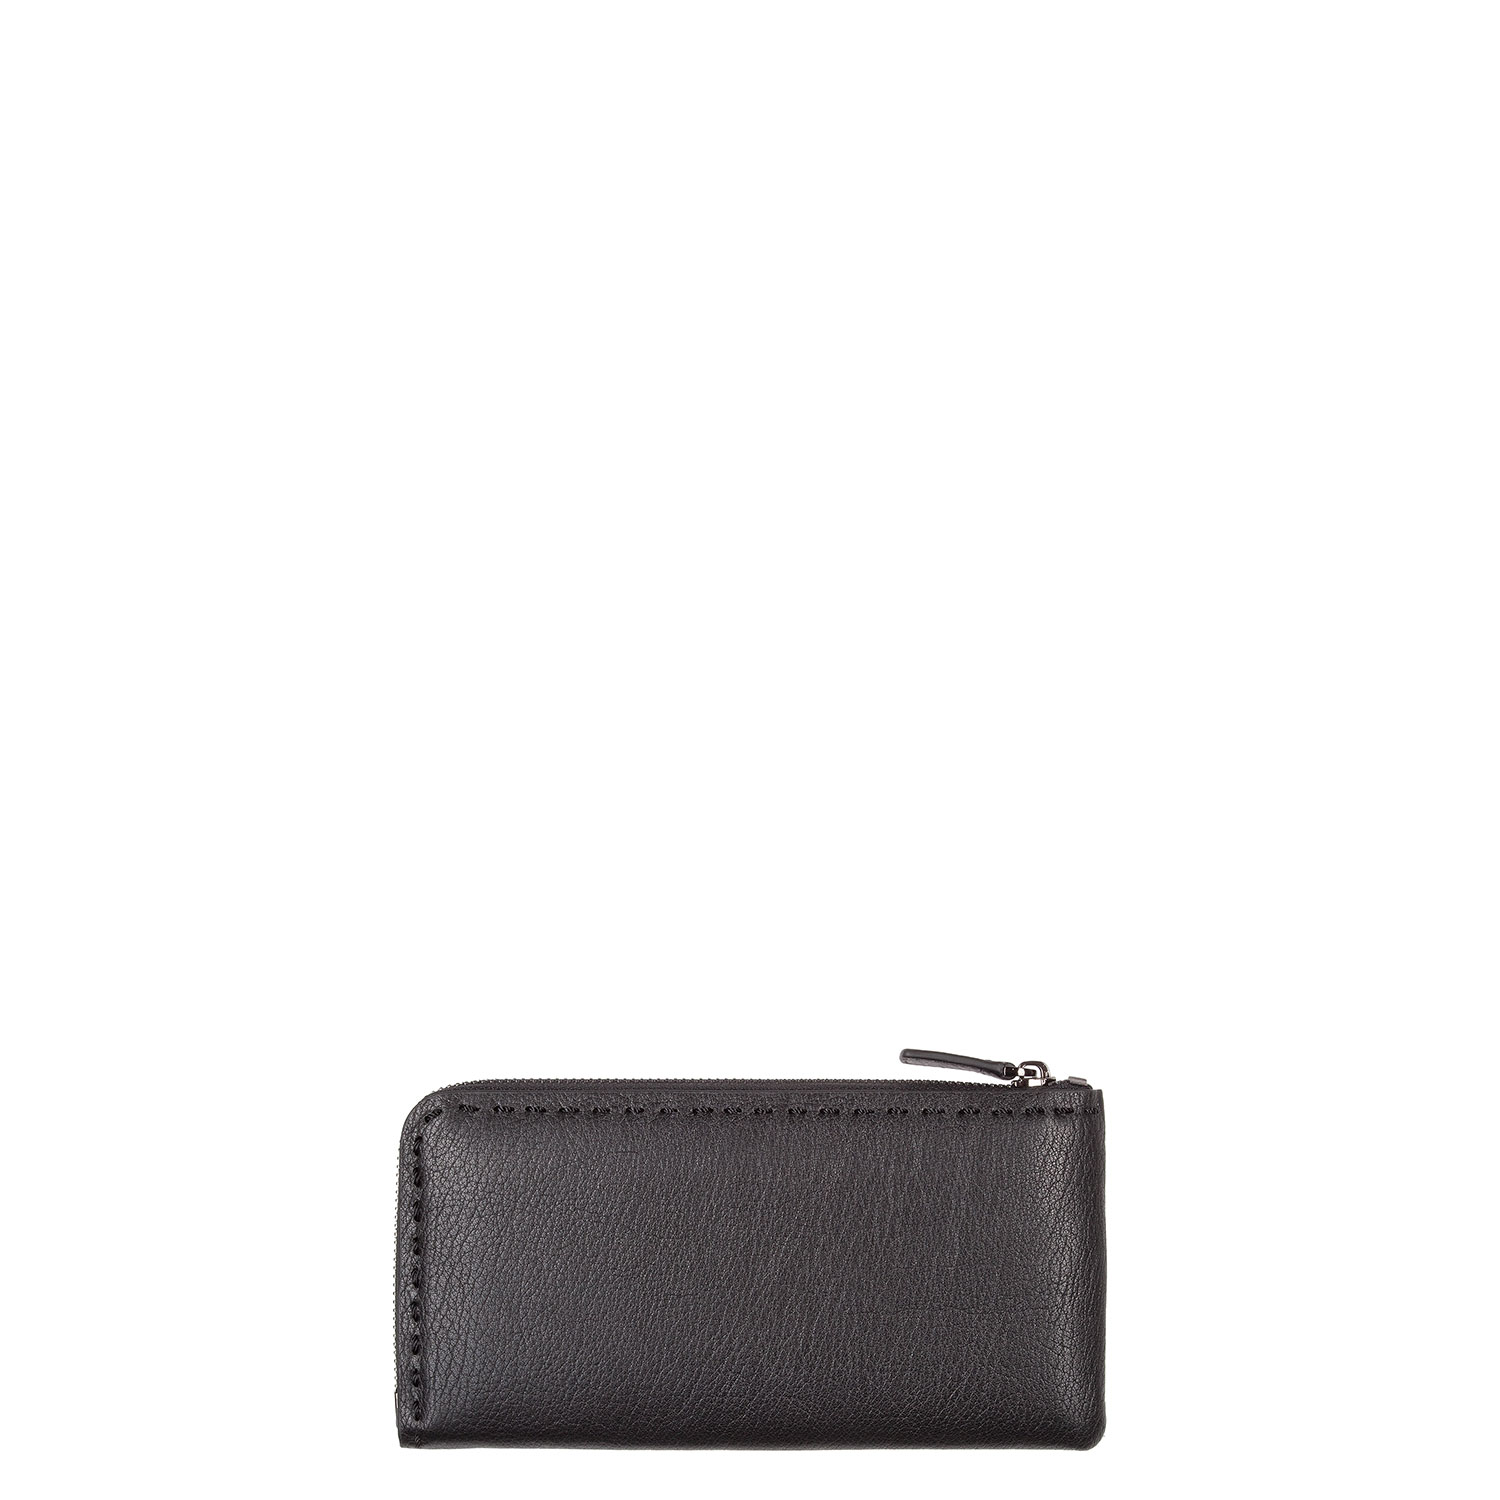 Men’s wallet PAZOLINI BS-N9313-1R8